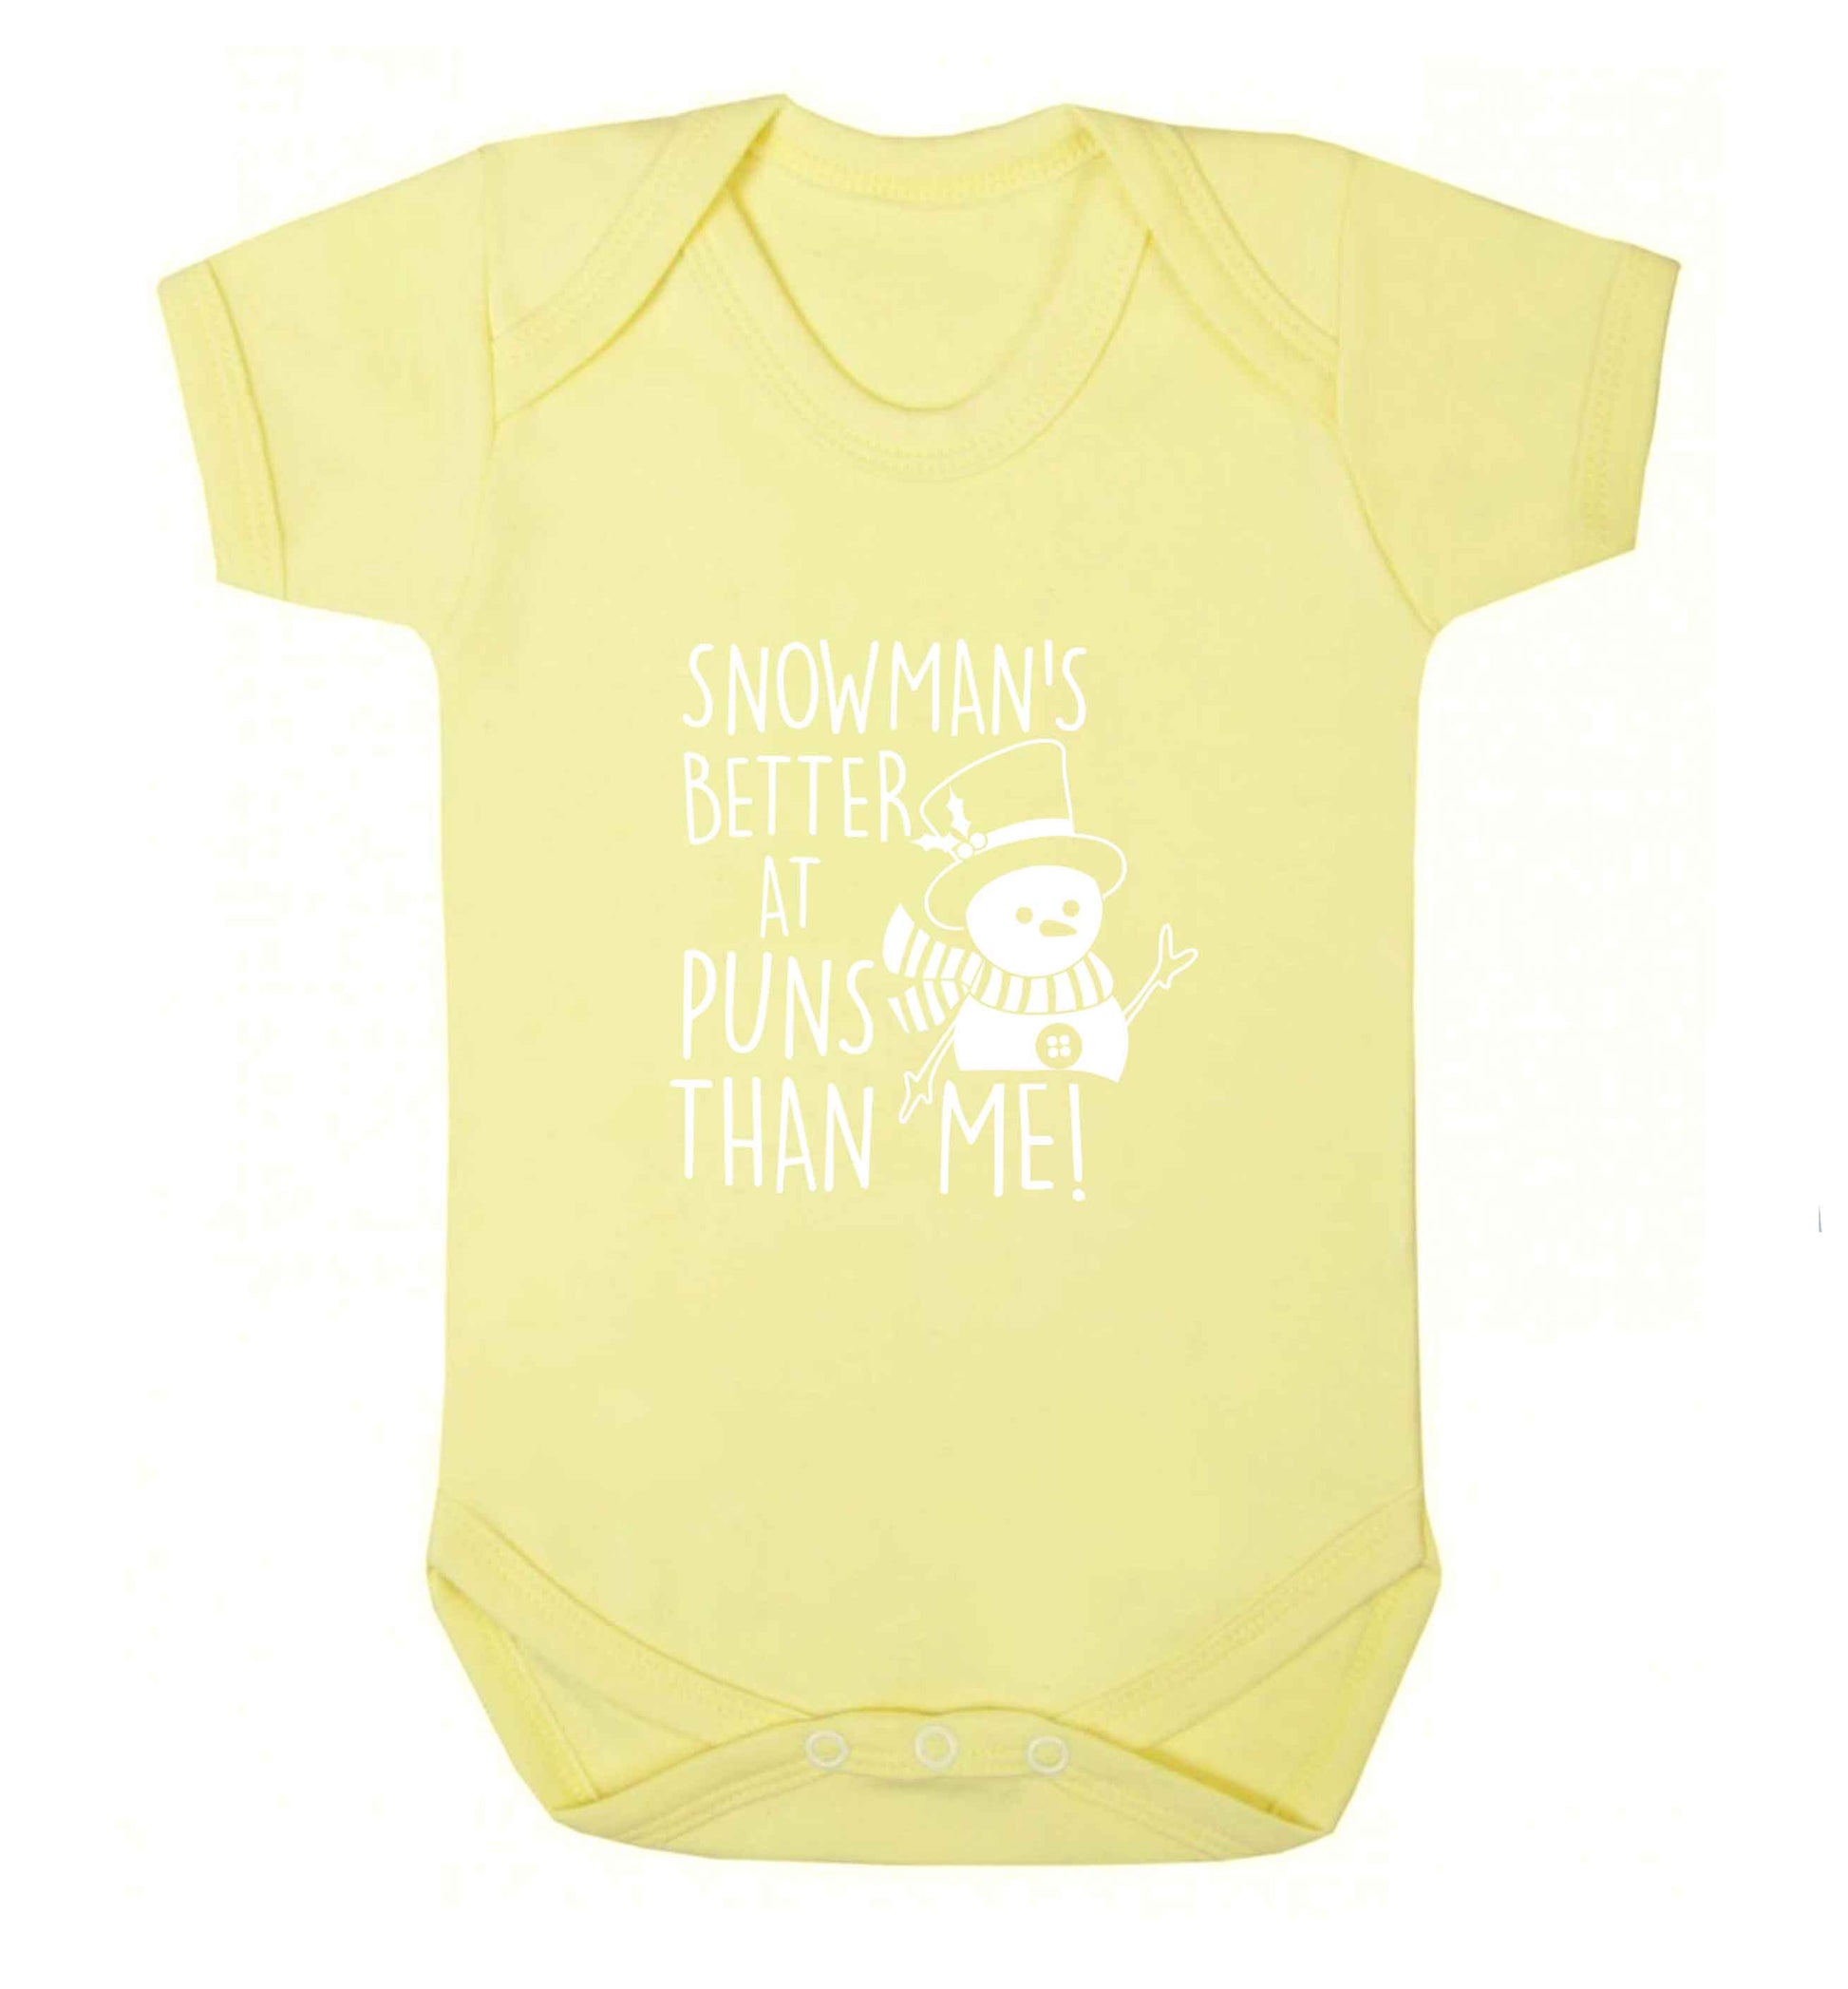 Snowman's Puns Me baby vest pale yellow 18-24 months